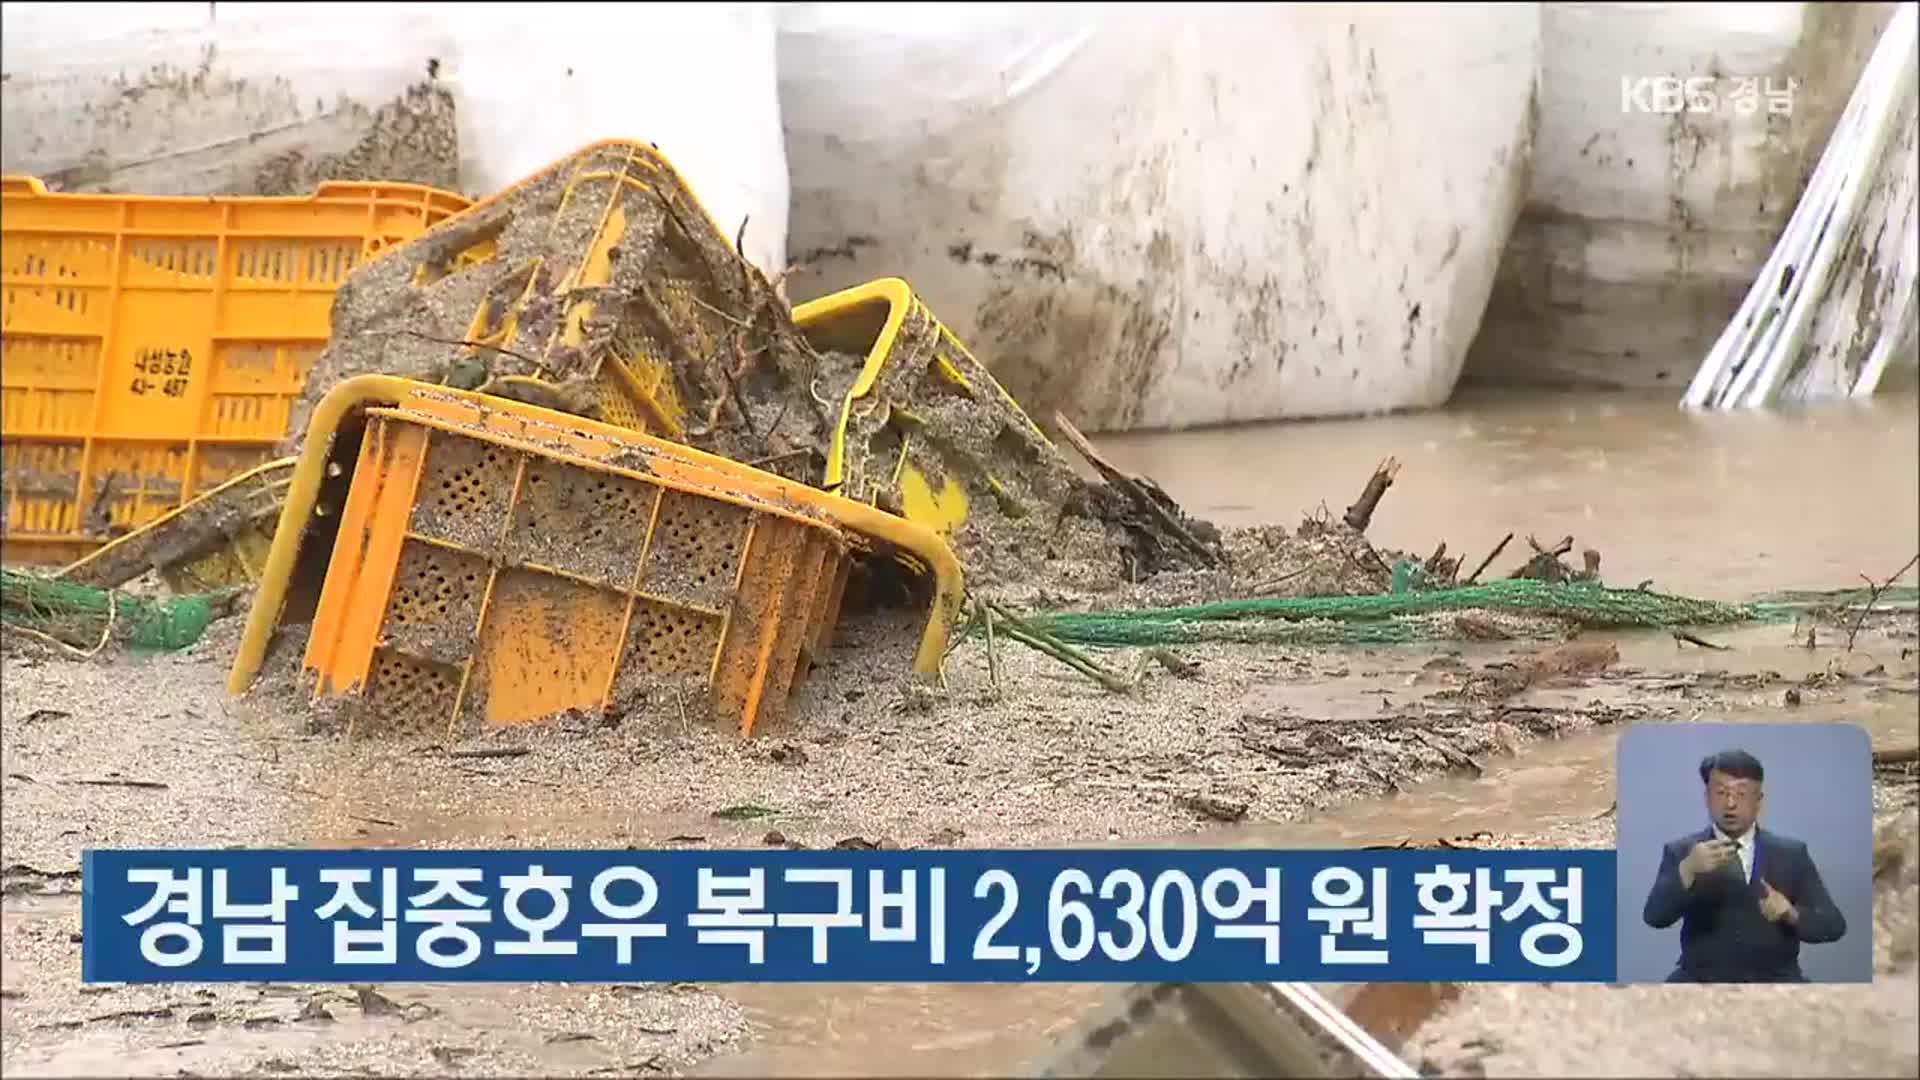 경남 집중호우 복구비 2,630억 원 확정